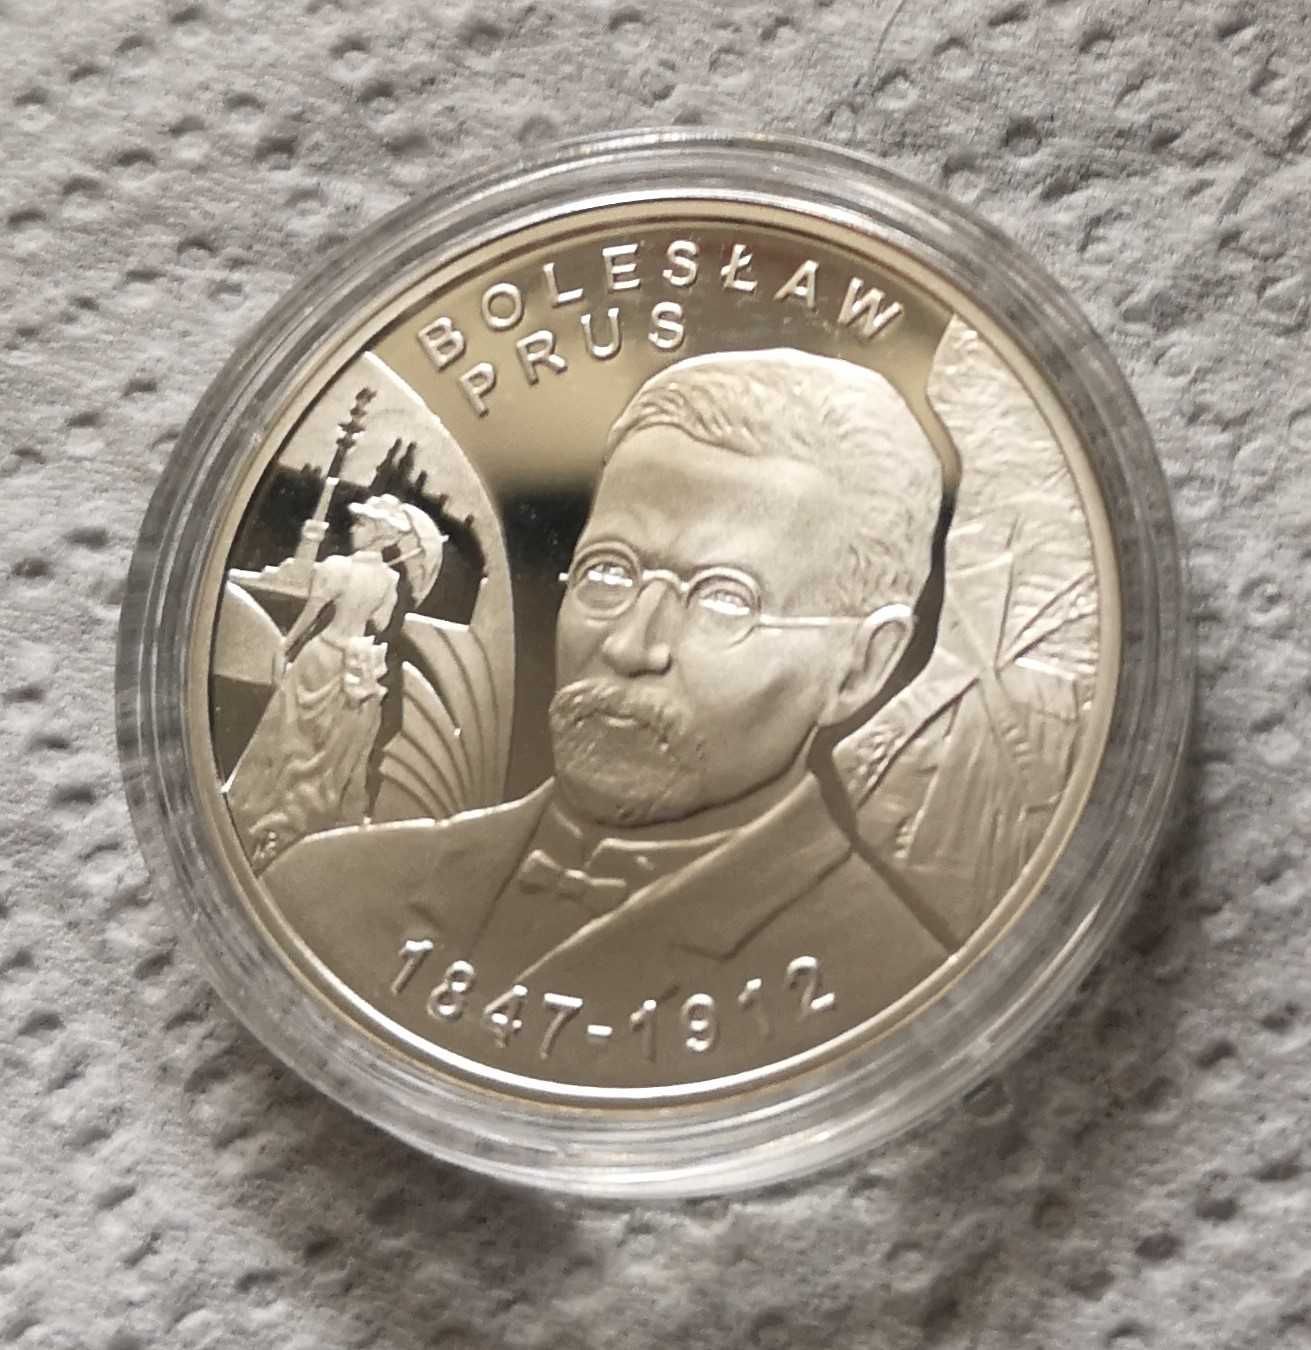 Moneta kolekcjonerska 10 zł 2012 r. Bolesław Prus plus blister